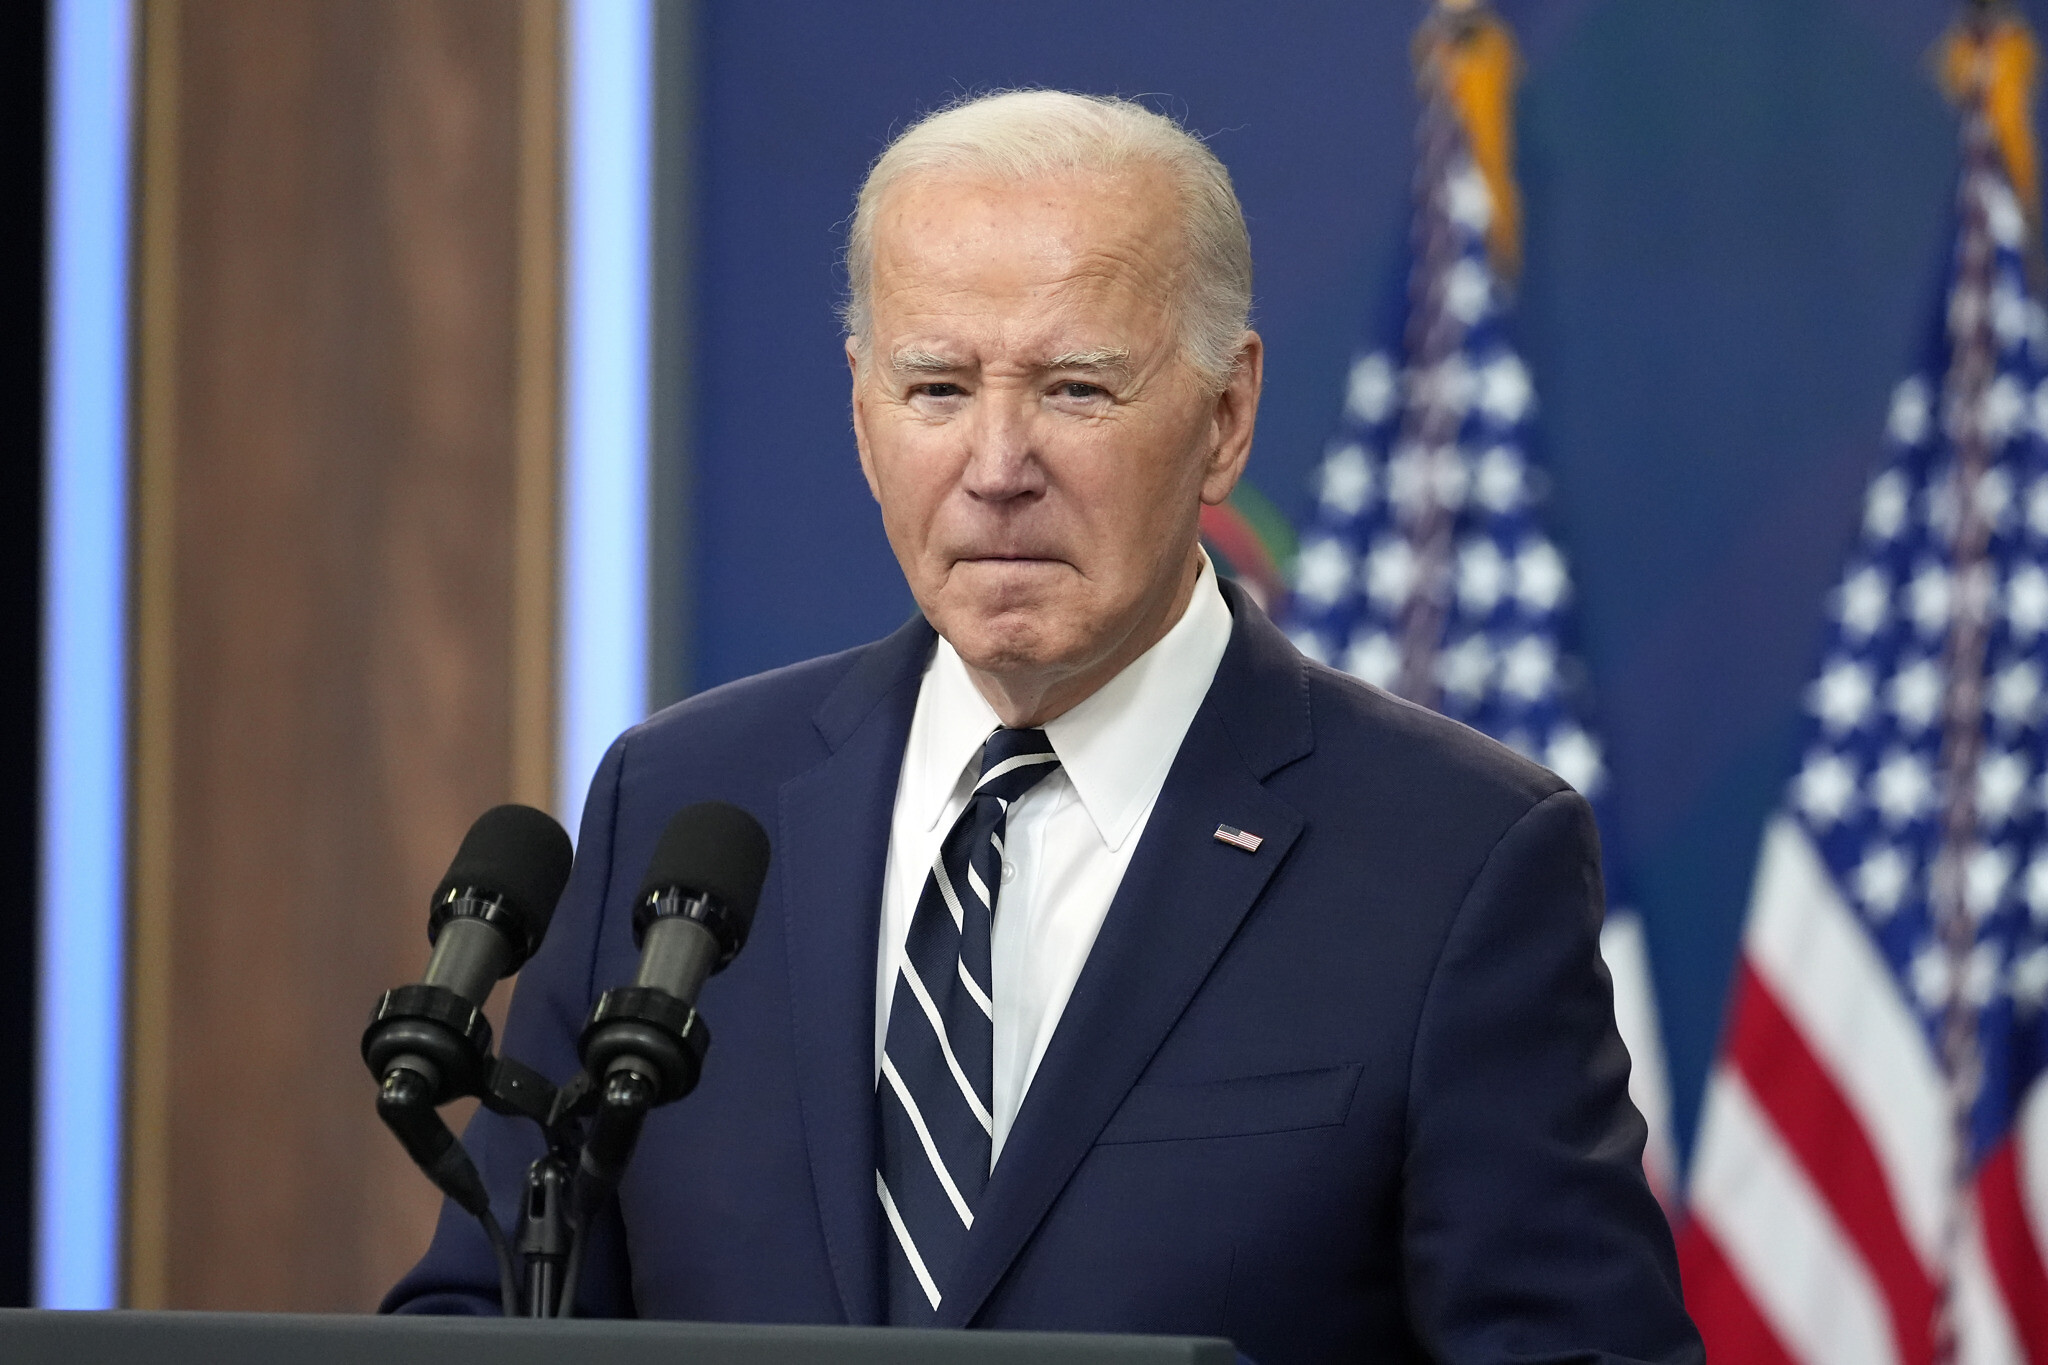 इसराइल पर ईरान के अटैक का अमेरिका ने किया विरोध, G-7 देश के नेताओं के साथ…

US President Joe Biden on Iran's attacks on Israel America opposes Iran's attack on Israel, along with leaders of G-7 countries